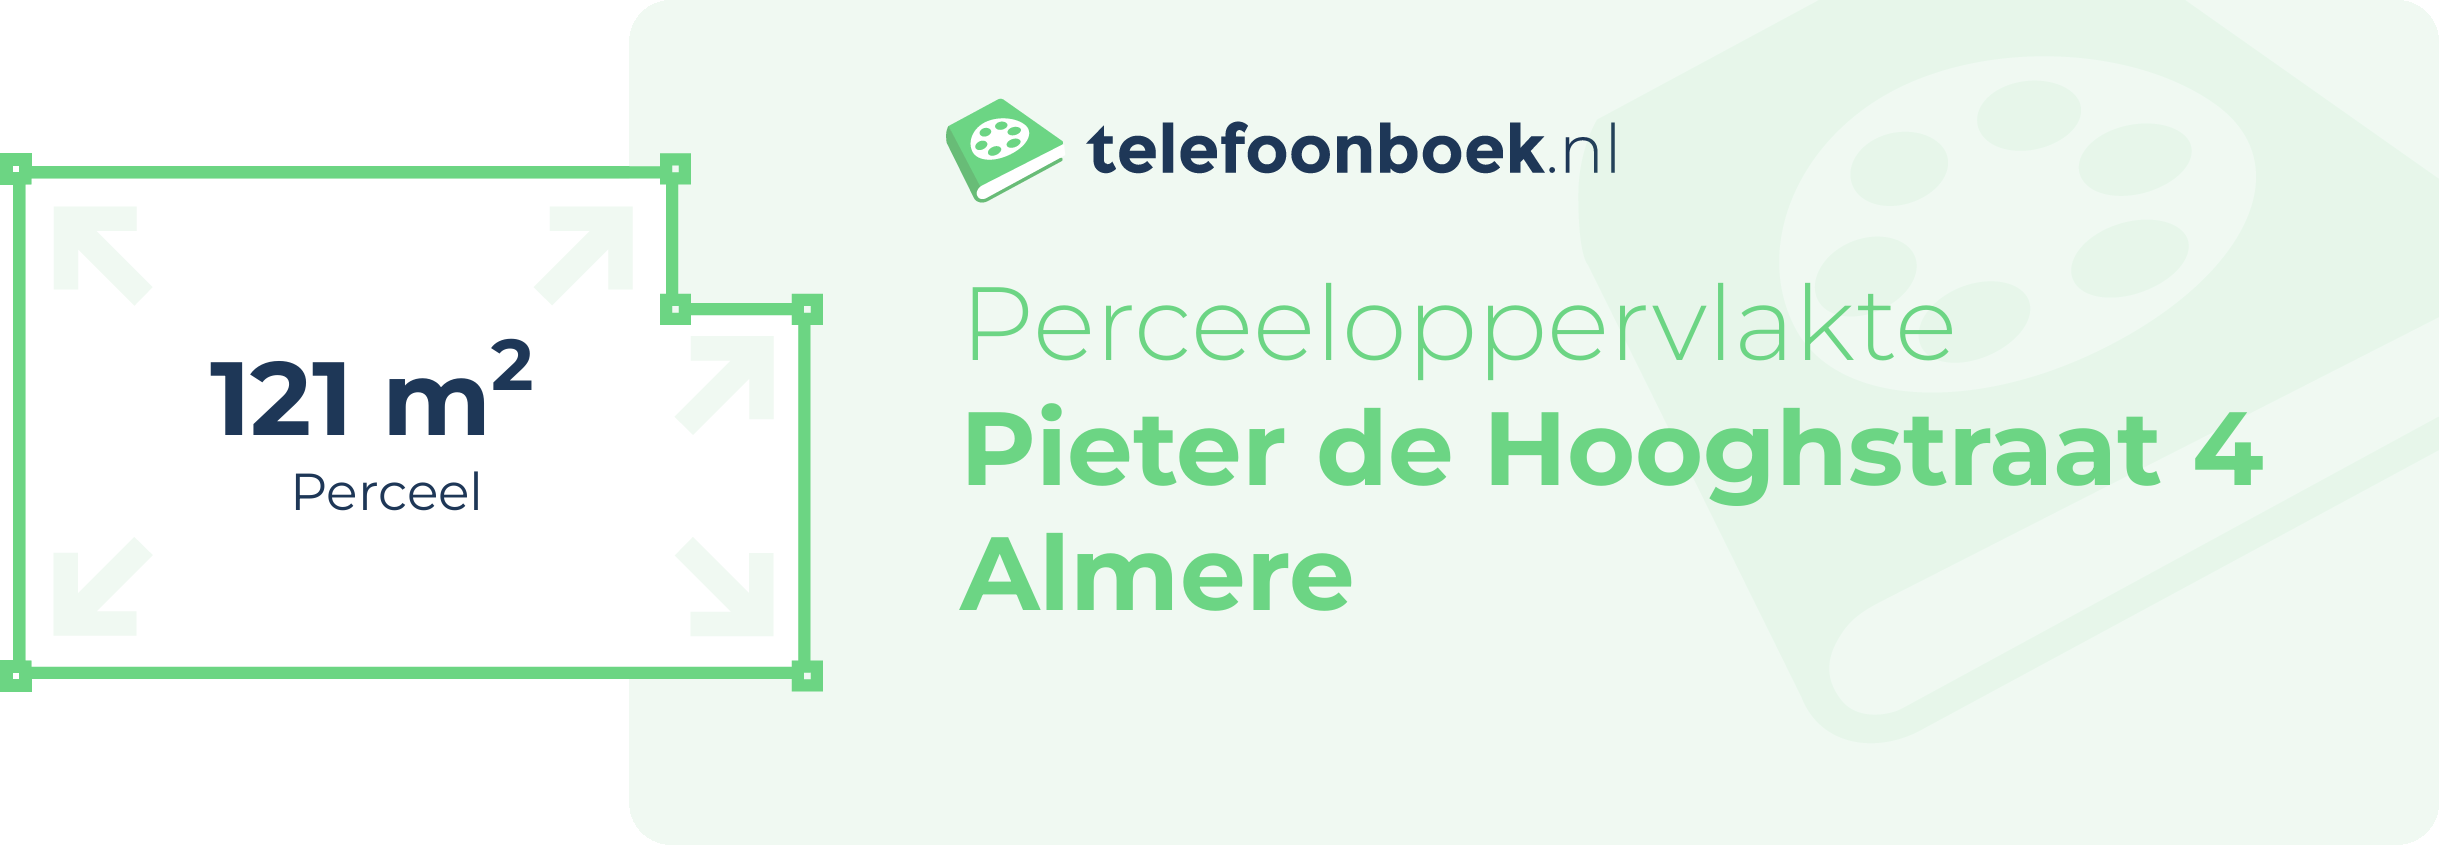 Perceeloppervlakte Pieter De Hooghstraat 4 Almere